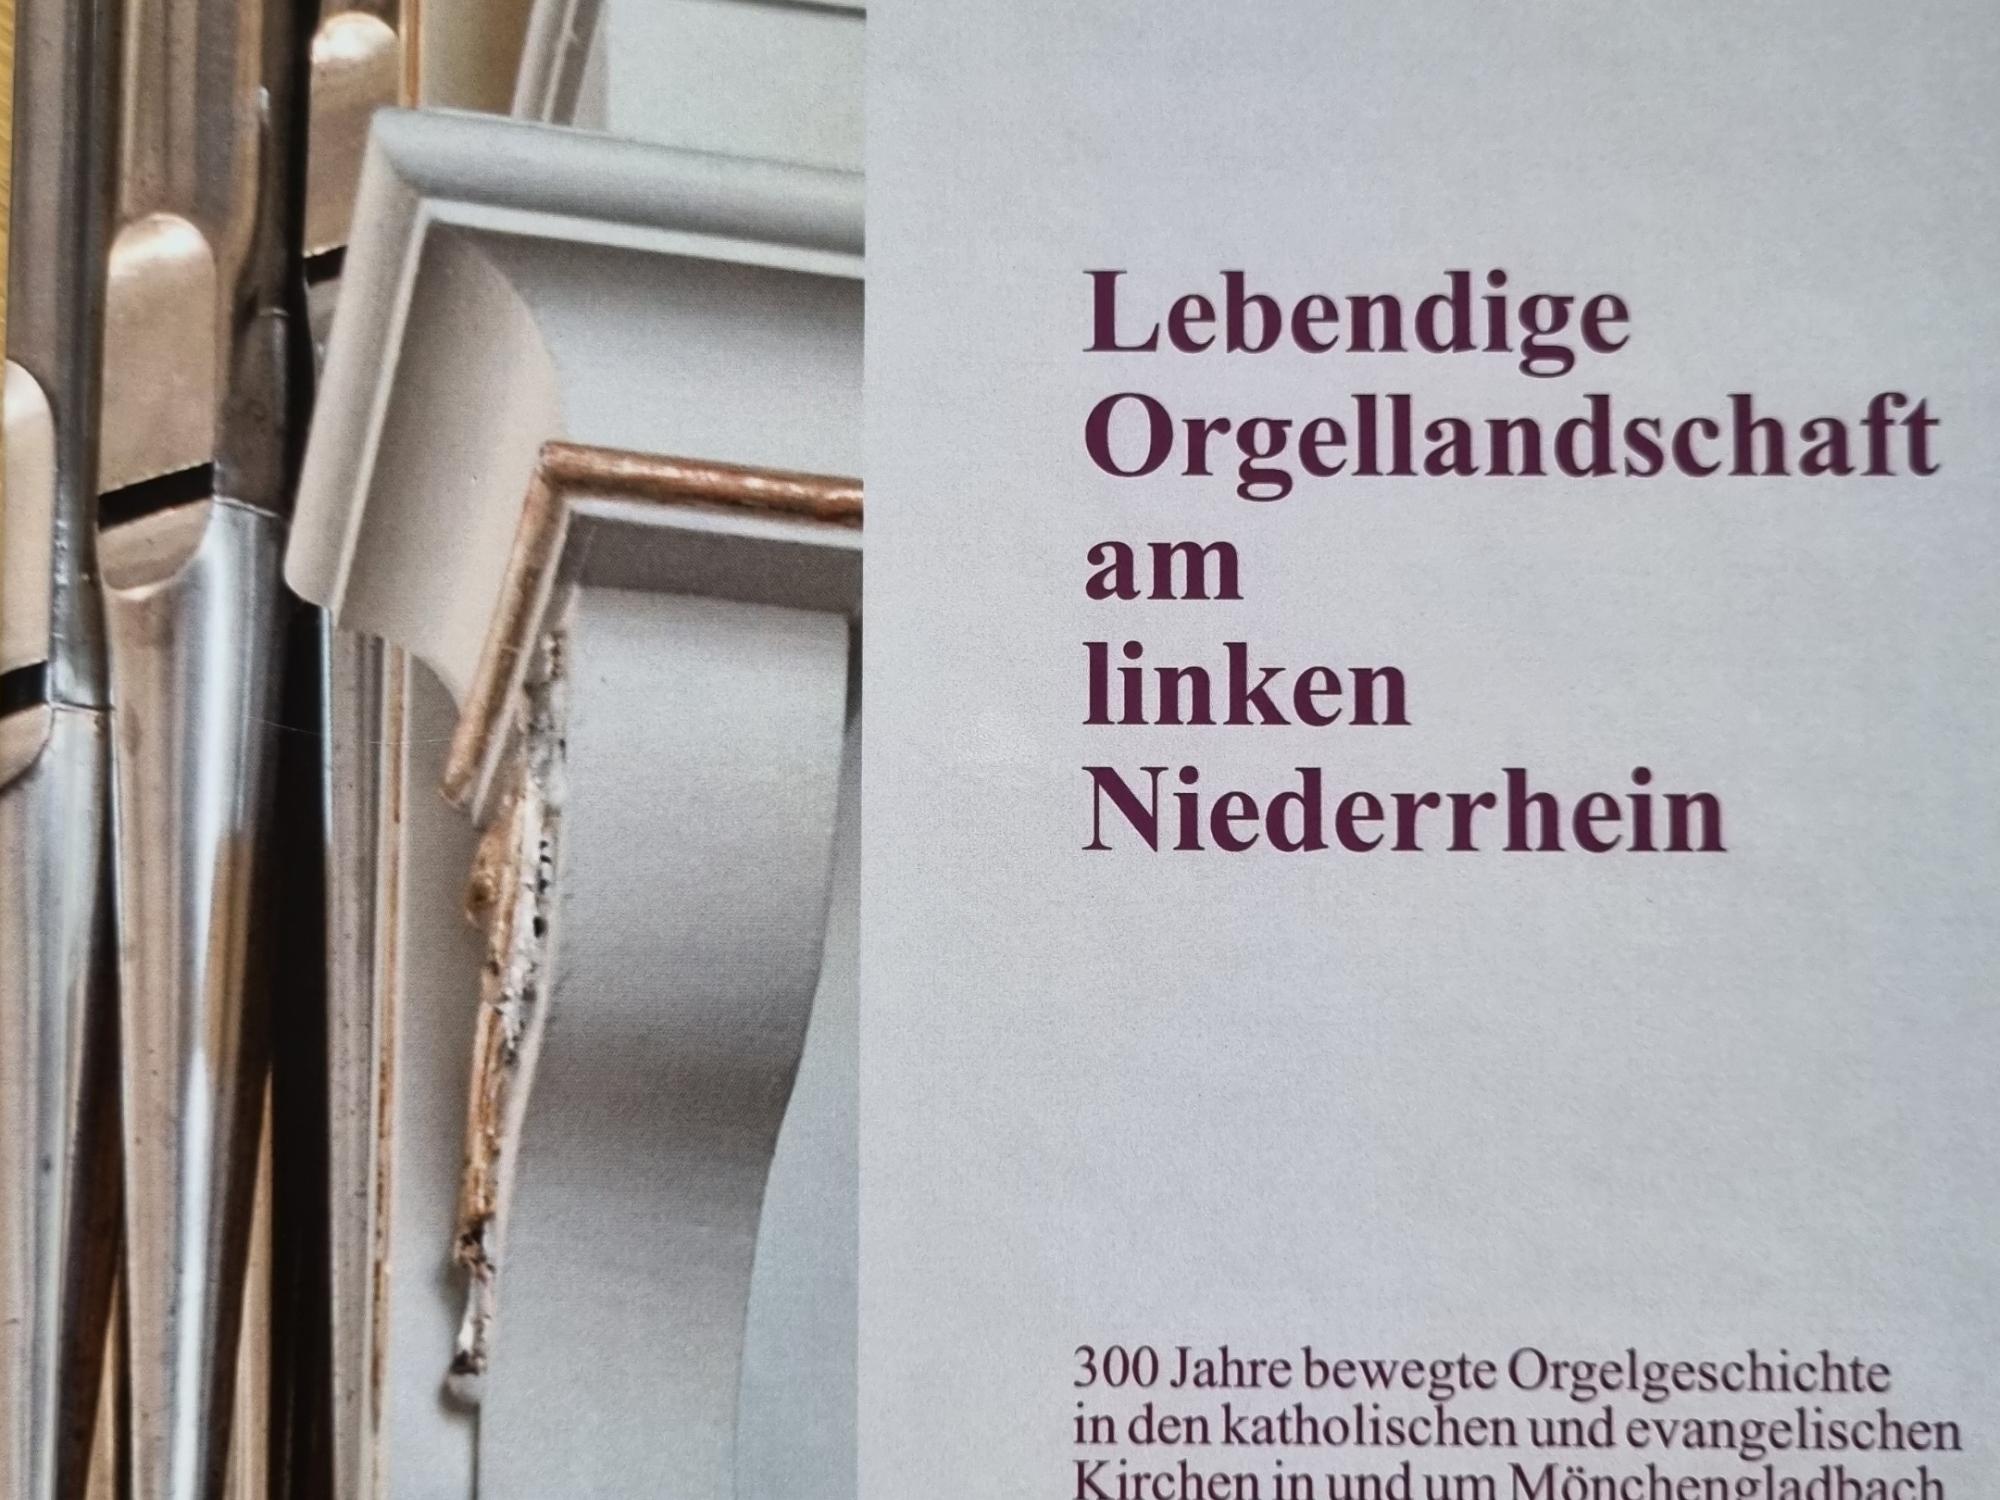 das Buch ‚Lebendige Orgellandschaft am linken Niederrhein‘ (c) privat